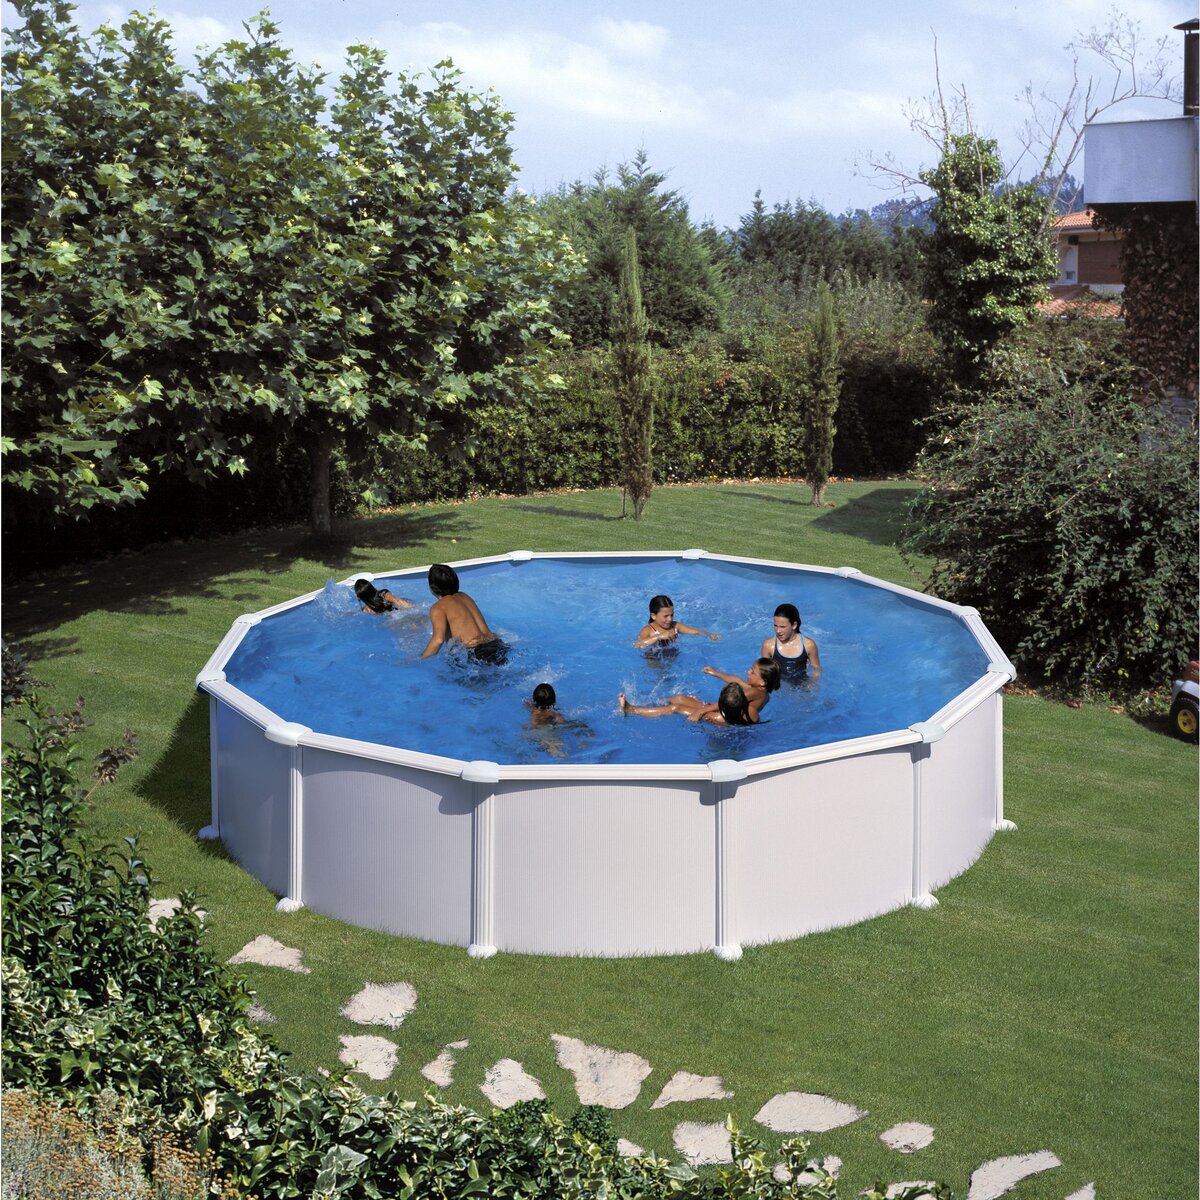 Gre - Bâche à bulles pour piscine ronde Gre Pool 3,45 m - Bâche de